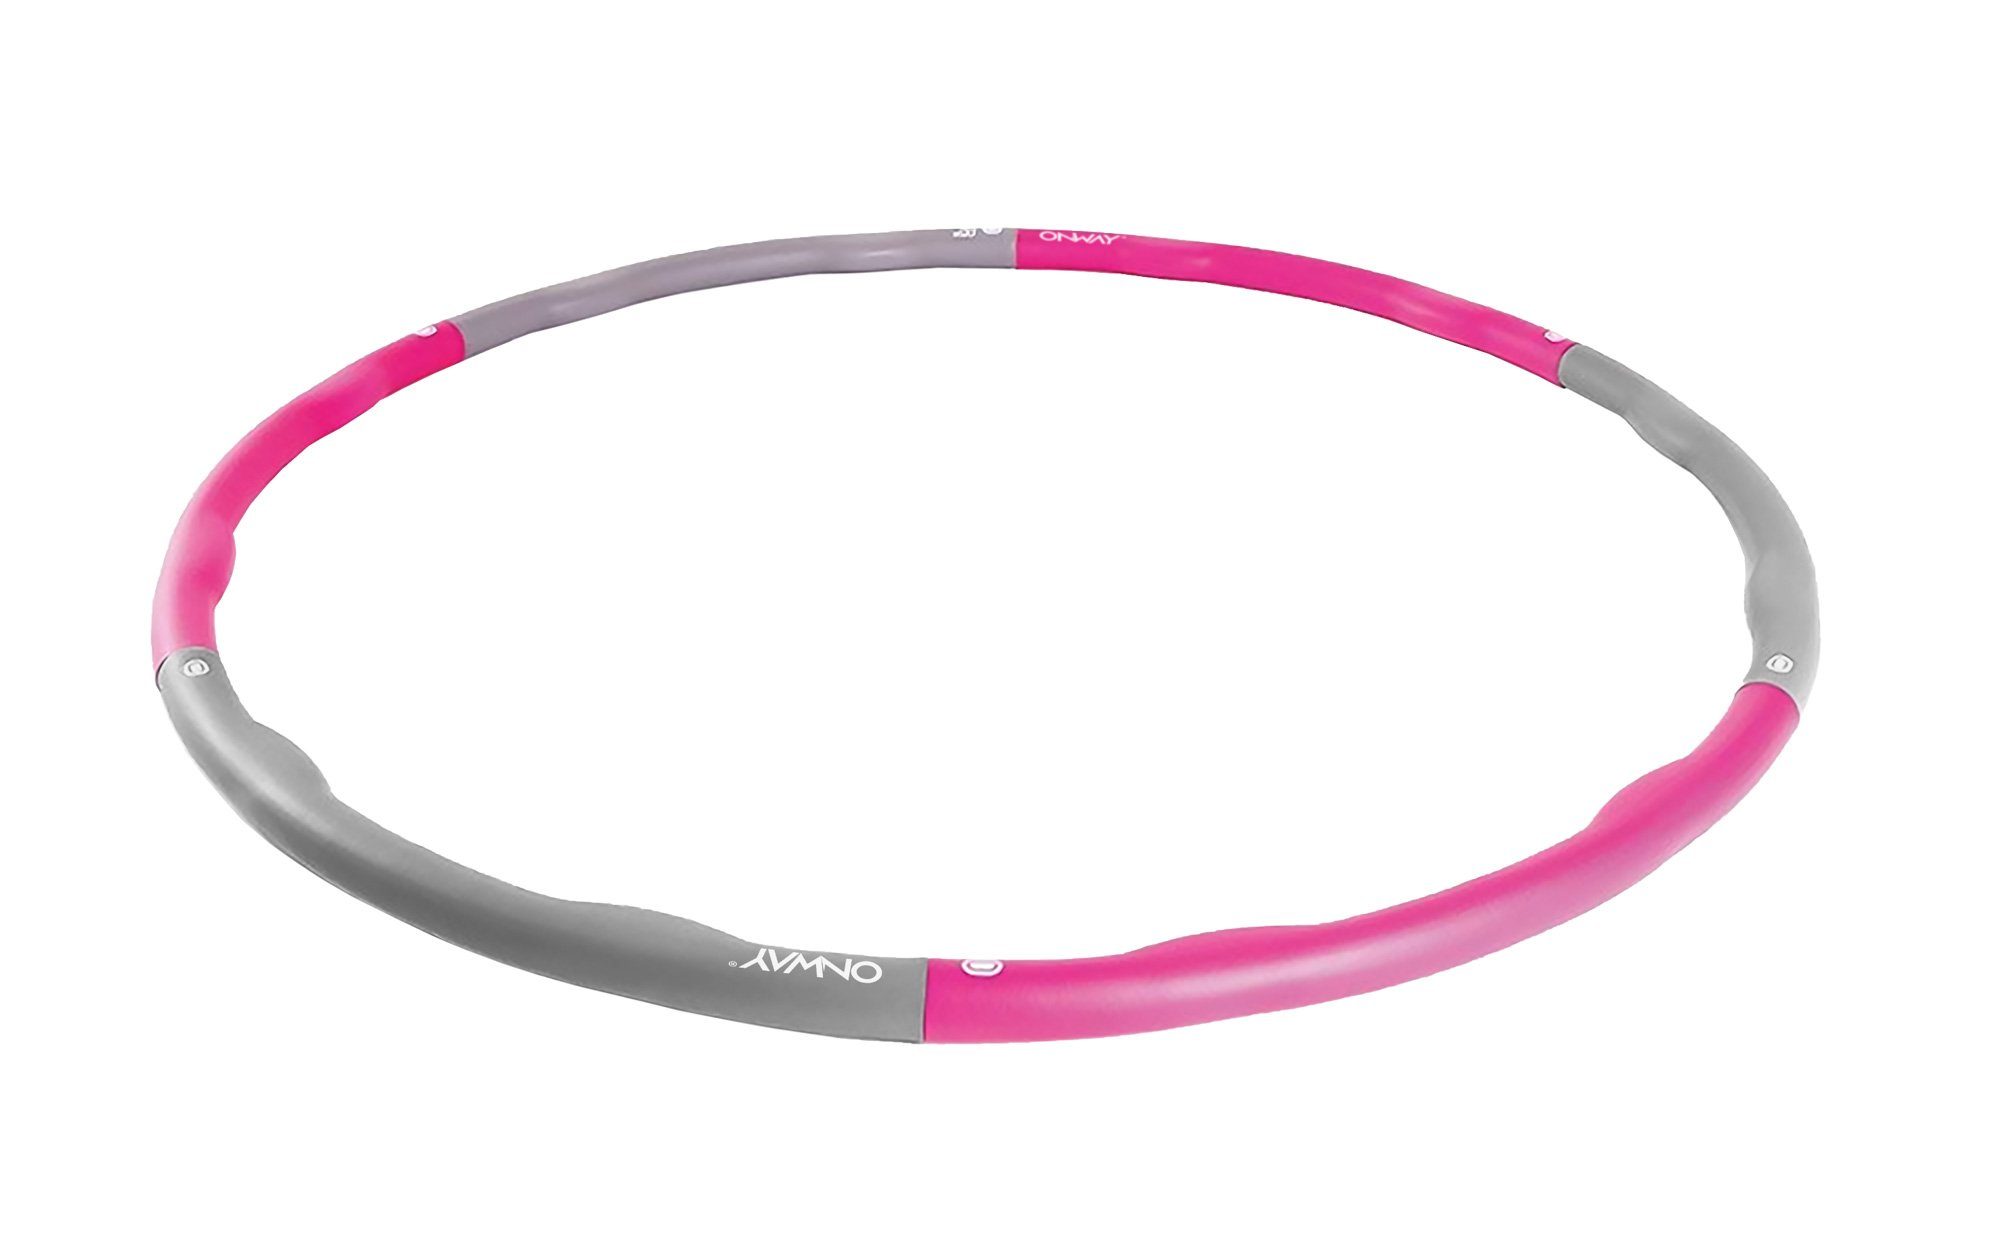 grau zum 6-teilig OFA1064, pink Hula Fitnessreifen Zusammenstecken Gymnastik Hula-Hoop-Reifen OnWay OnWay Hoop Reifen